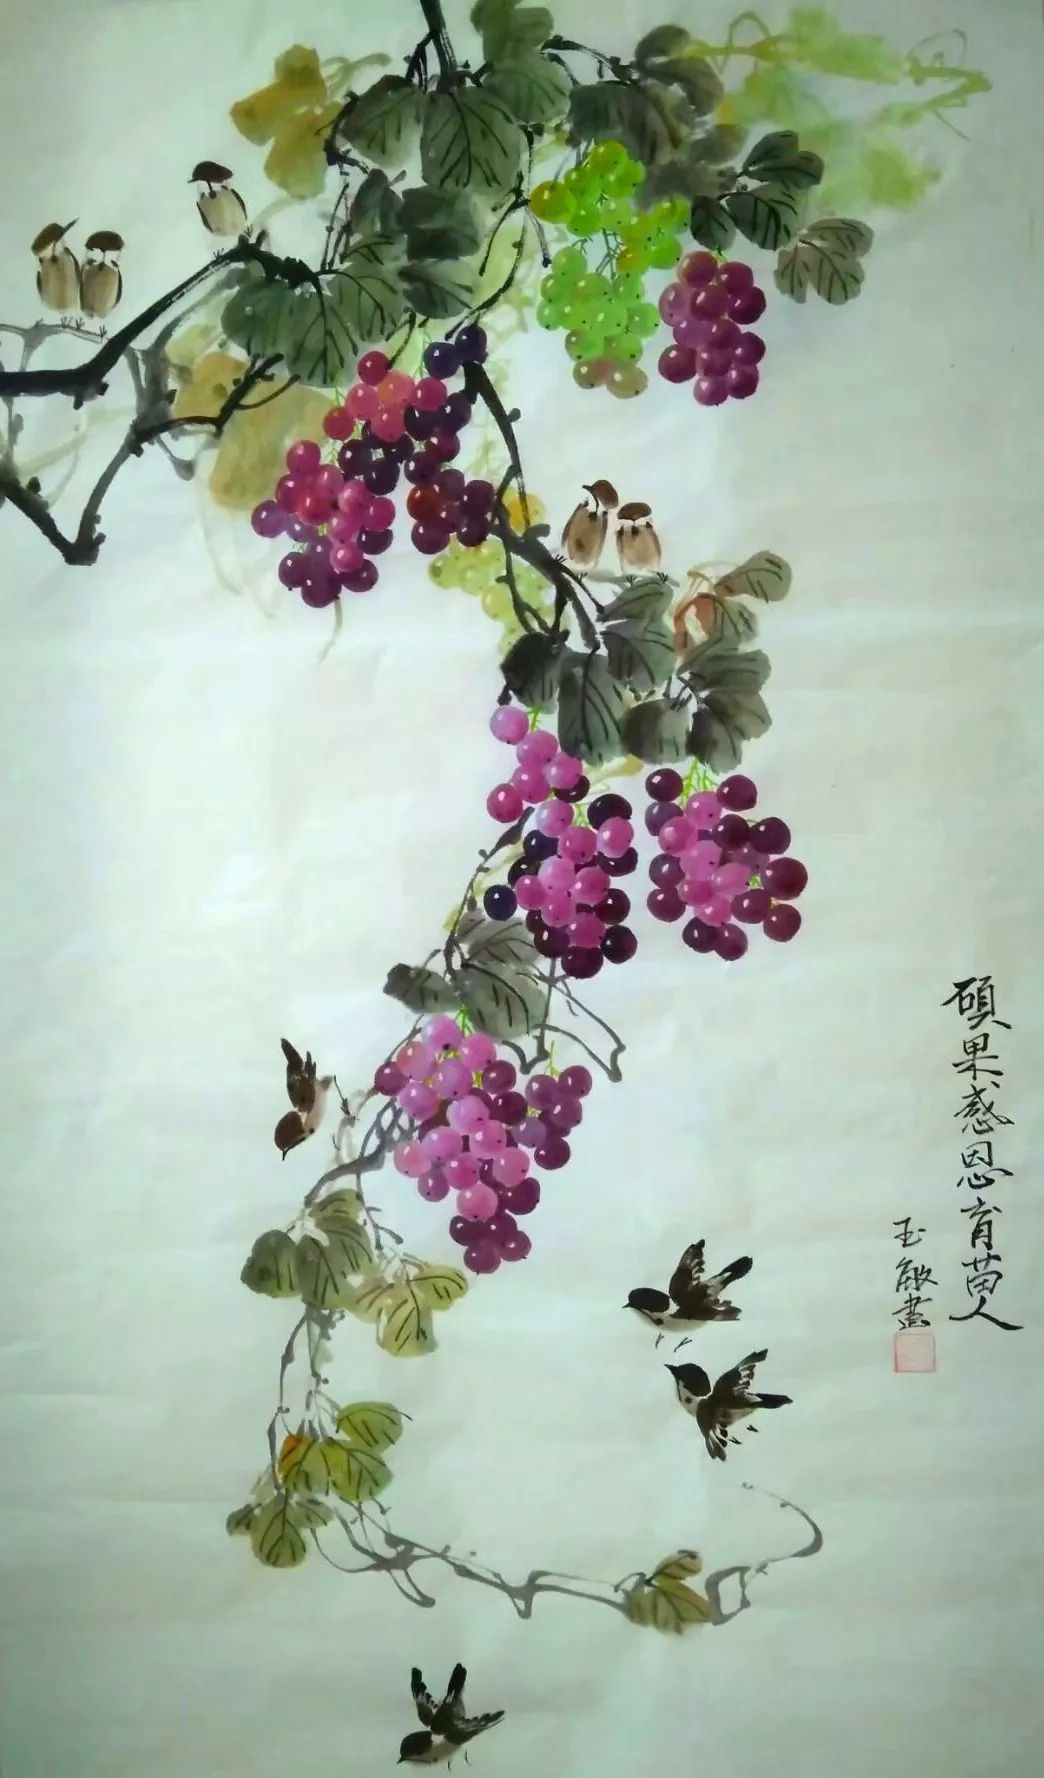 原创「艺术中国」——高玉敏绘画作品赏析